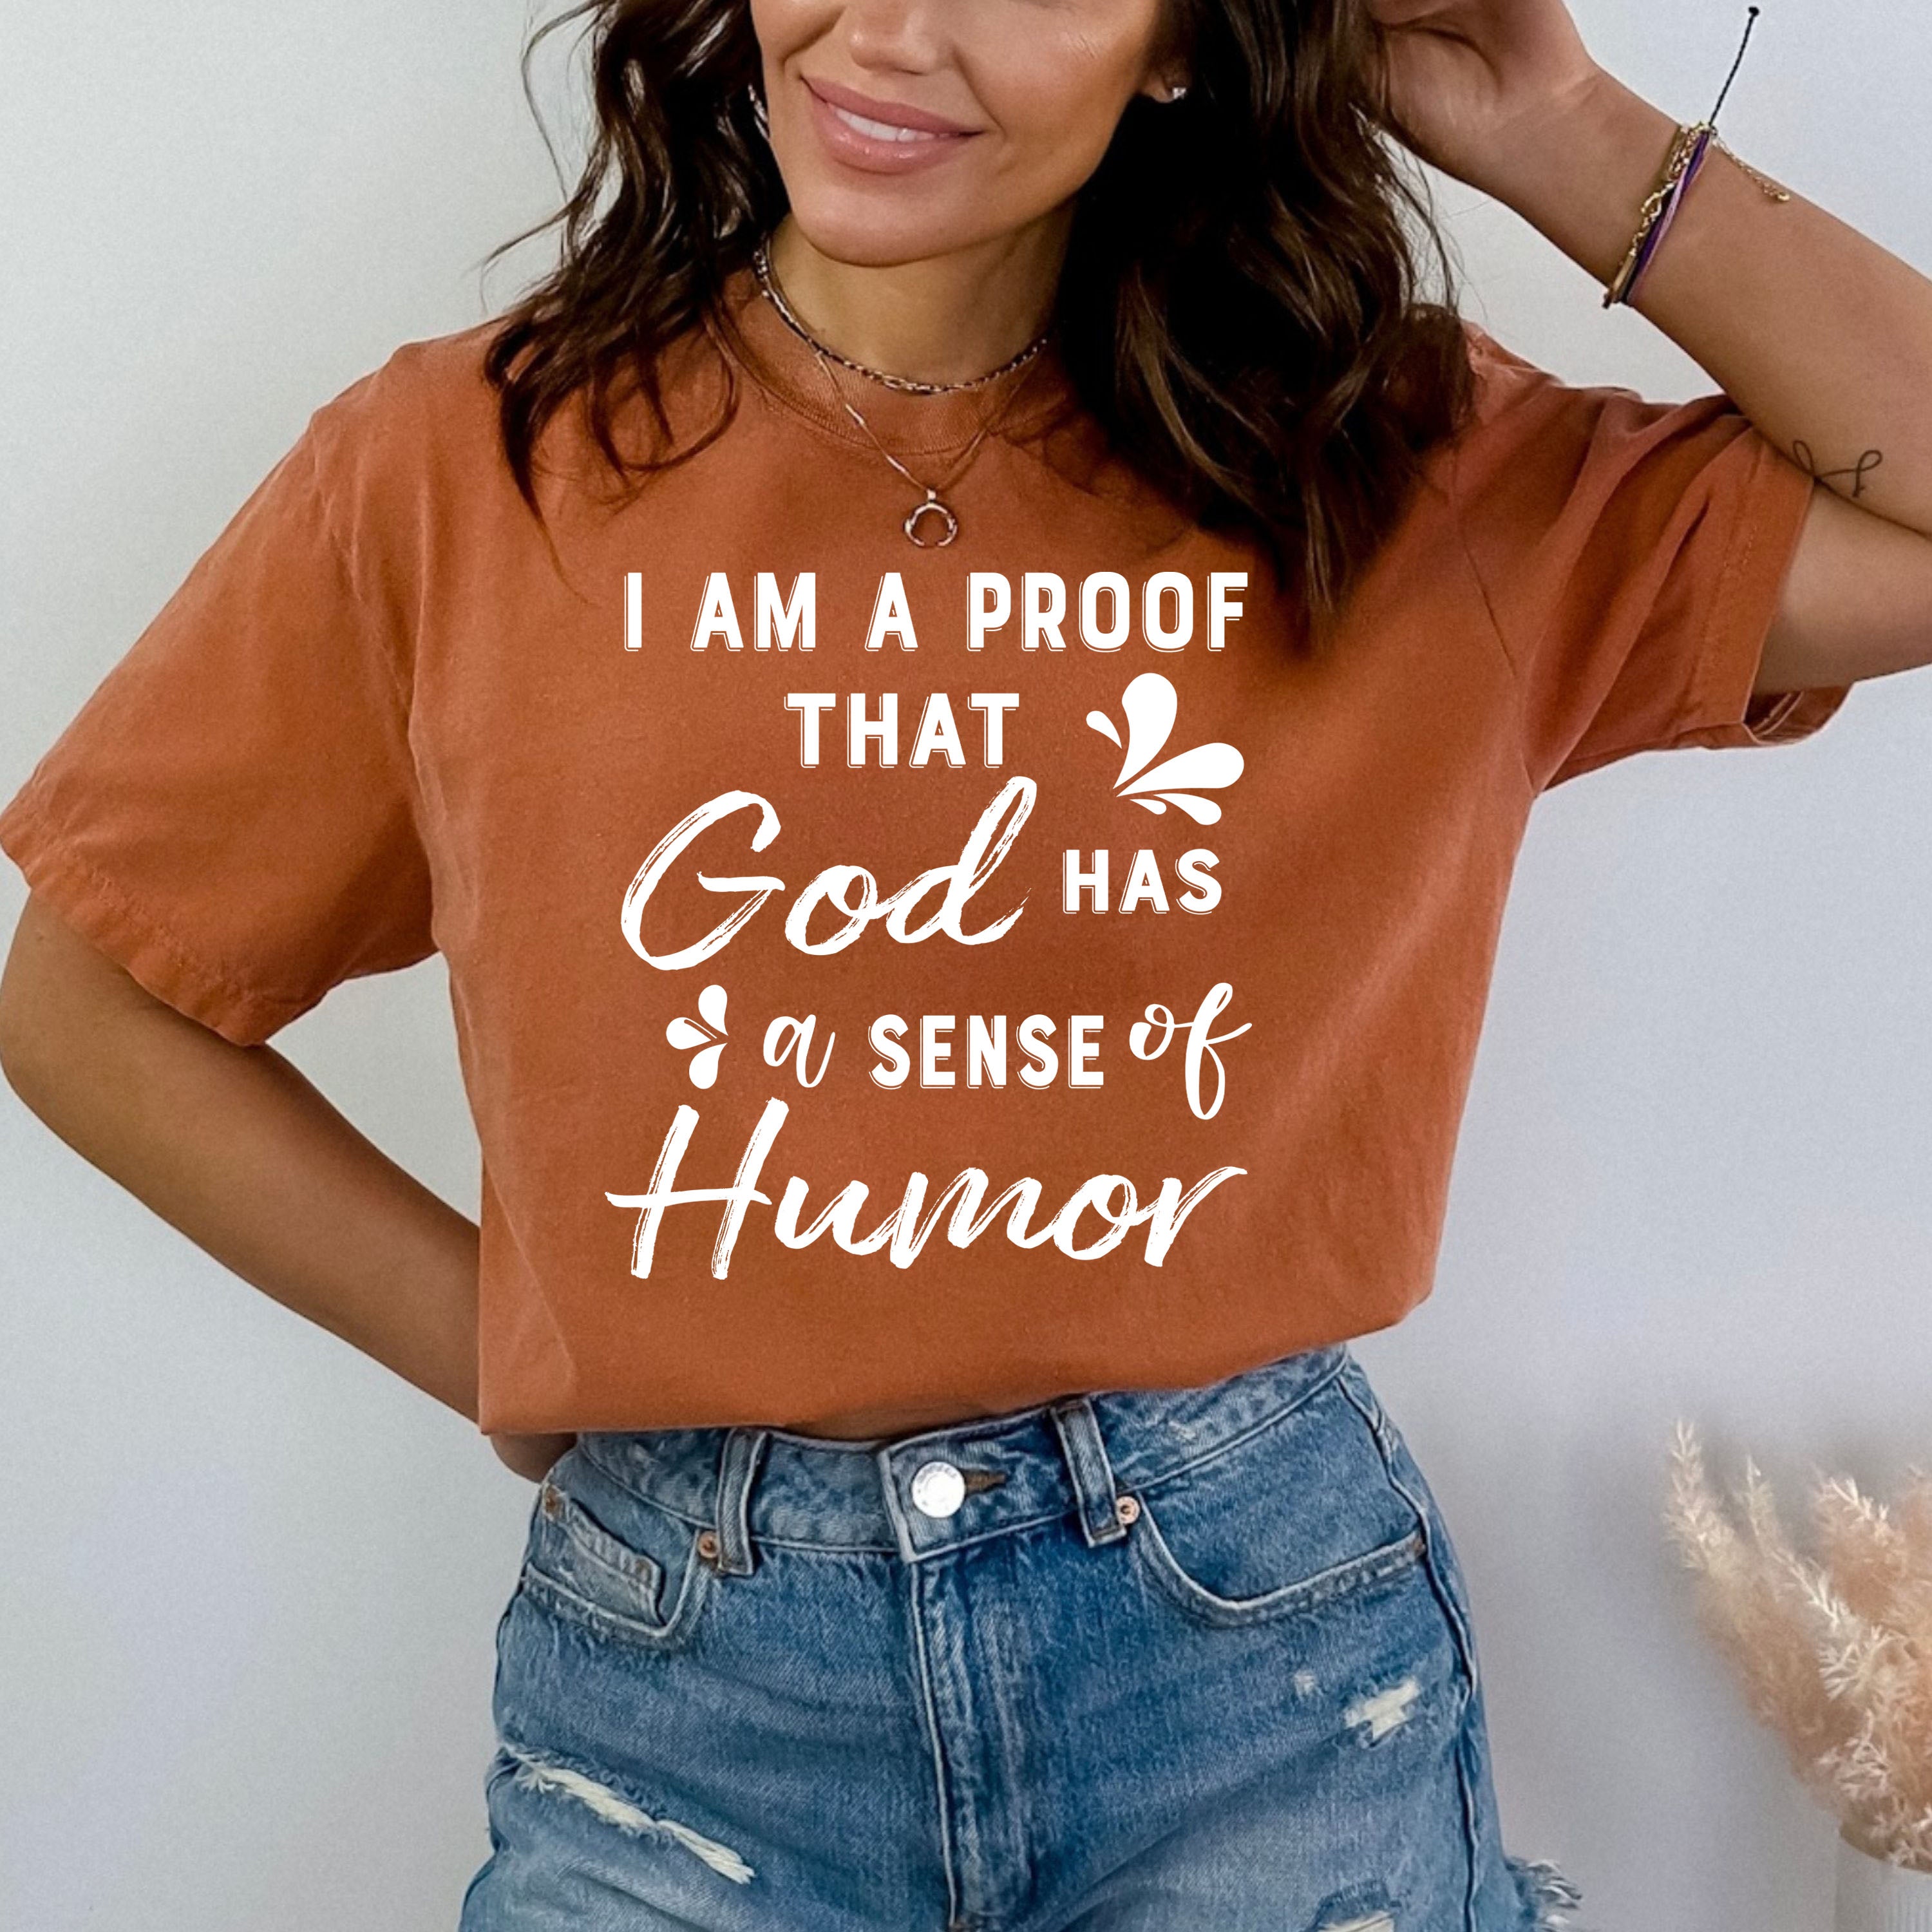 God Has A Sense Of Humor - Bella canvas